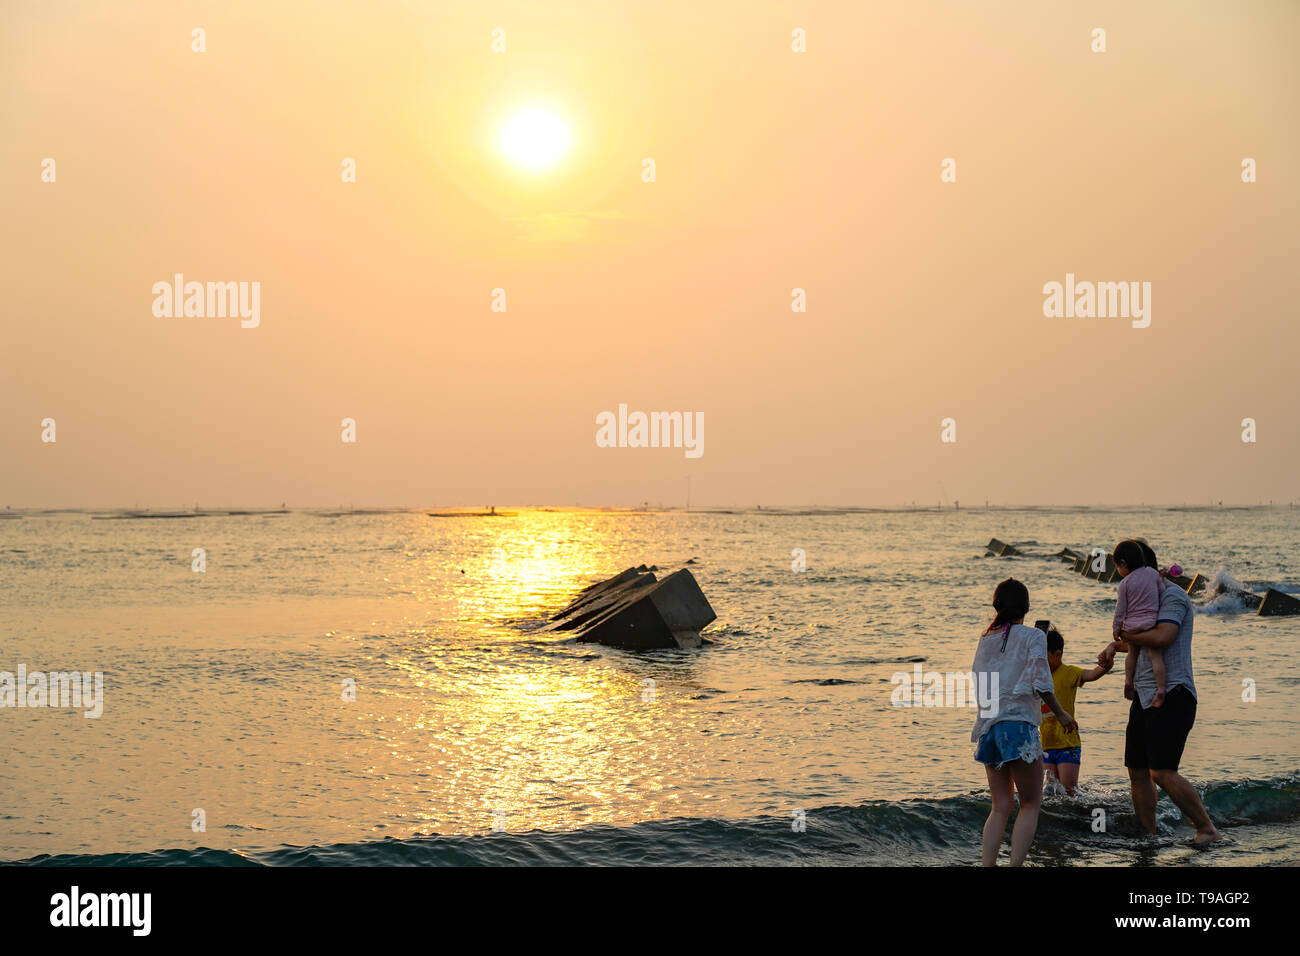 Vista de la playa con un amarillo brillante puesta de sol en el horizonte con una familia de Asia jugando en el agua. Foto de stock